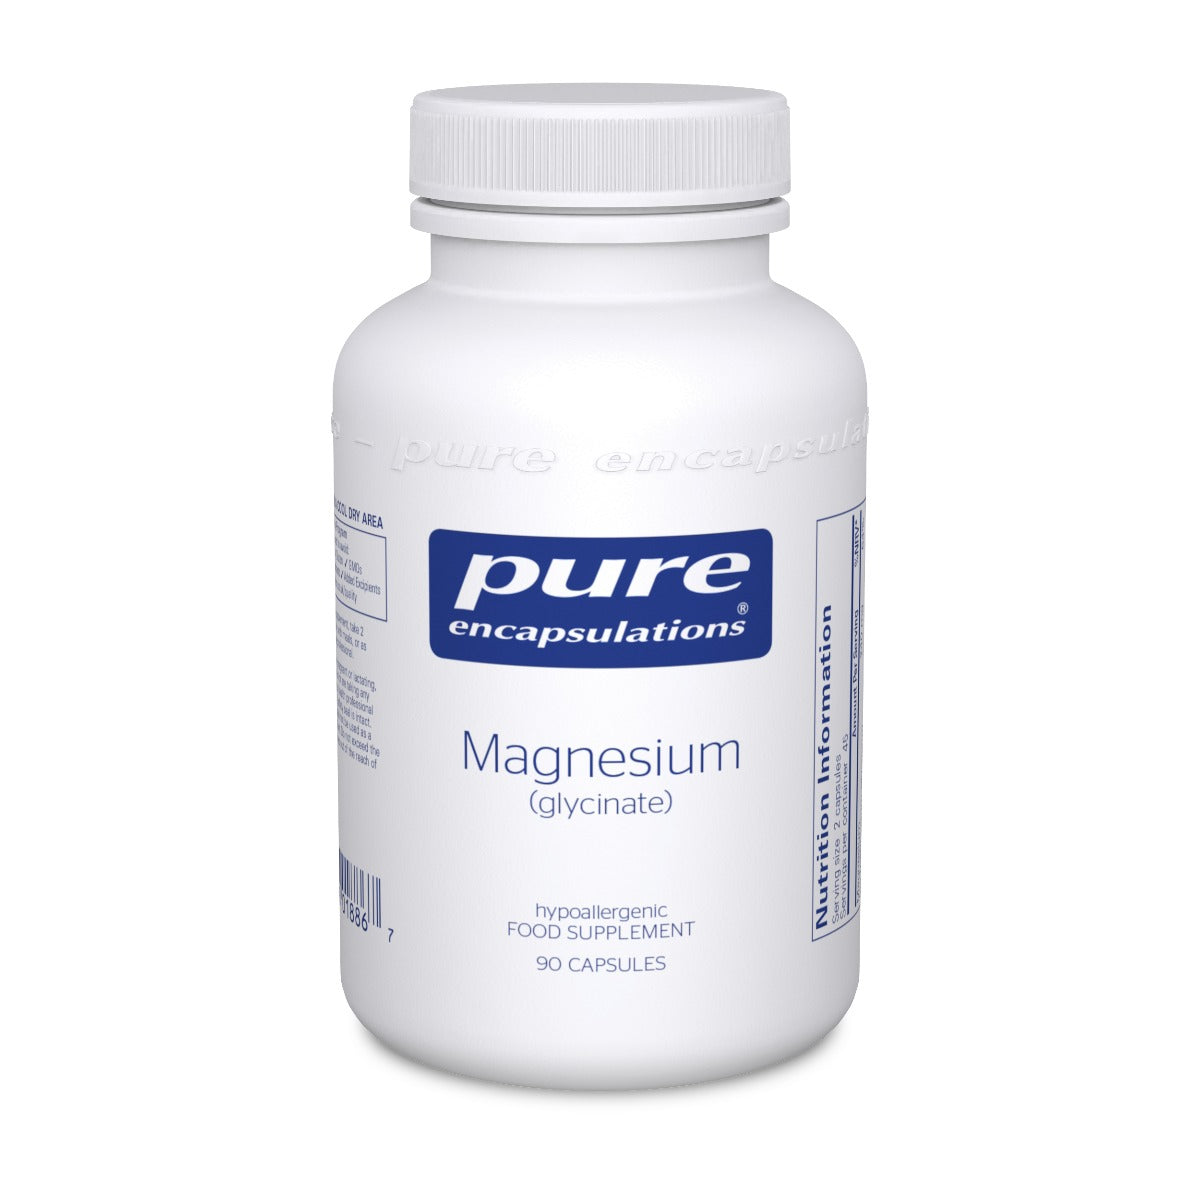 Magnesium (glycinate) - 90 Capsules | Pure Encapsulations